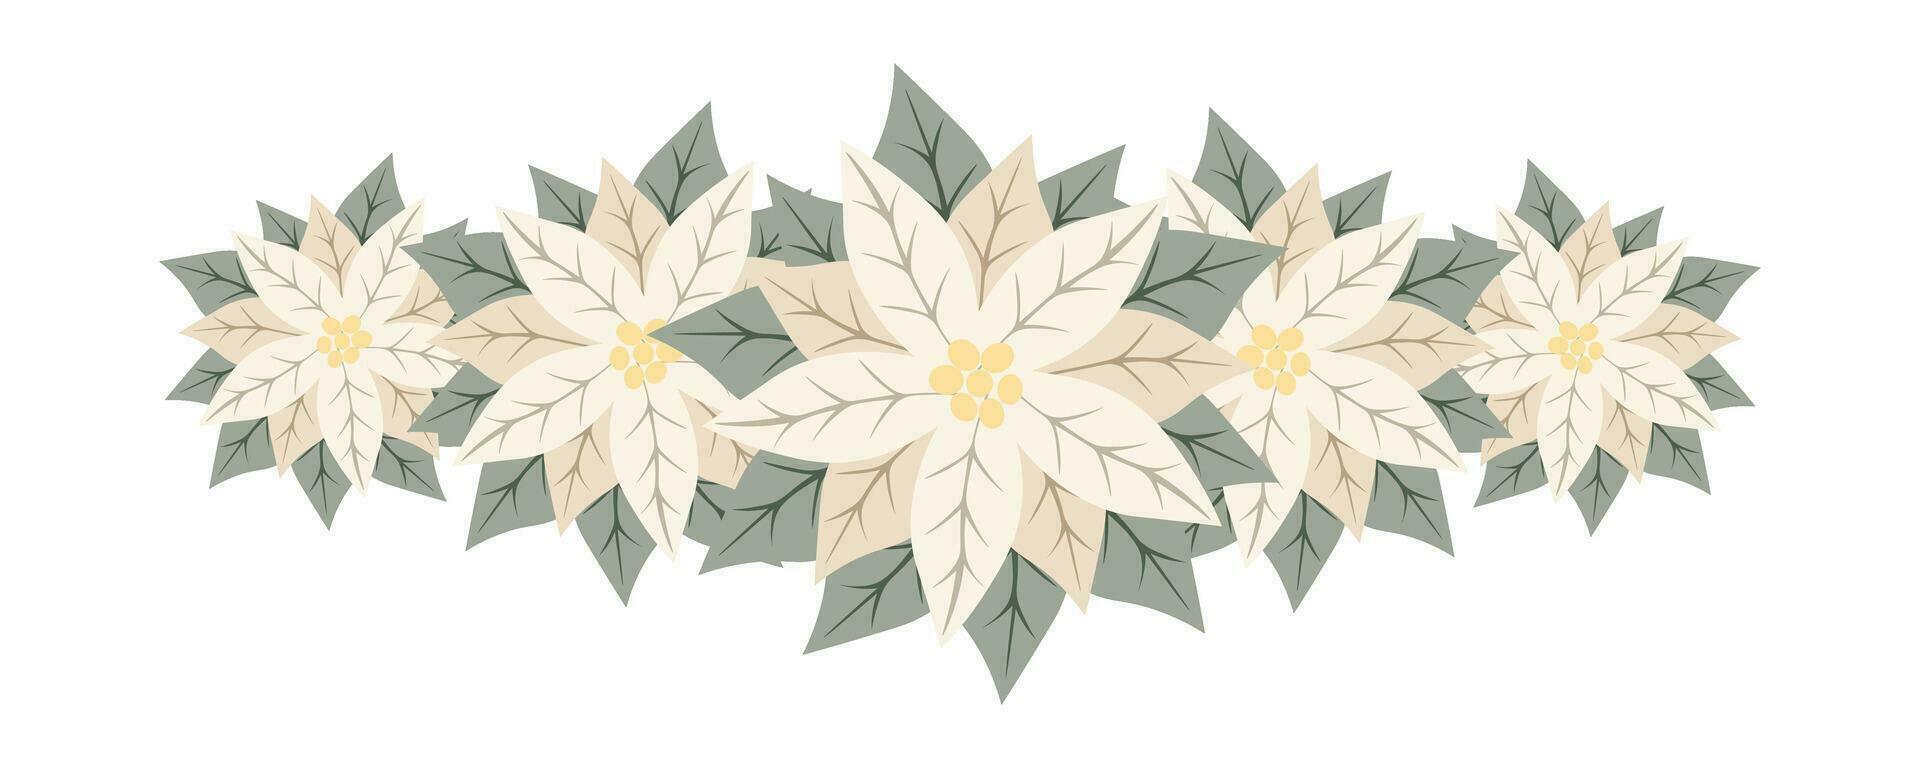 décoratif branche de blanc poinsettia fleurs. isolé floral Nouveau année et Noël décor pour salutation carte, invitation, vacances conception vecteur